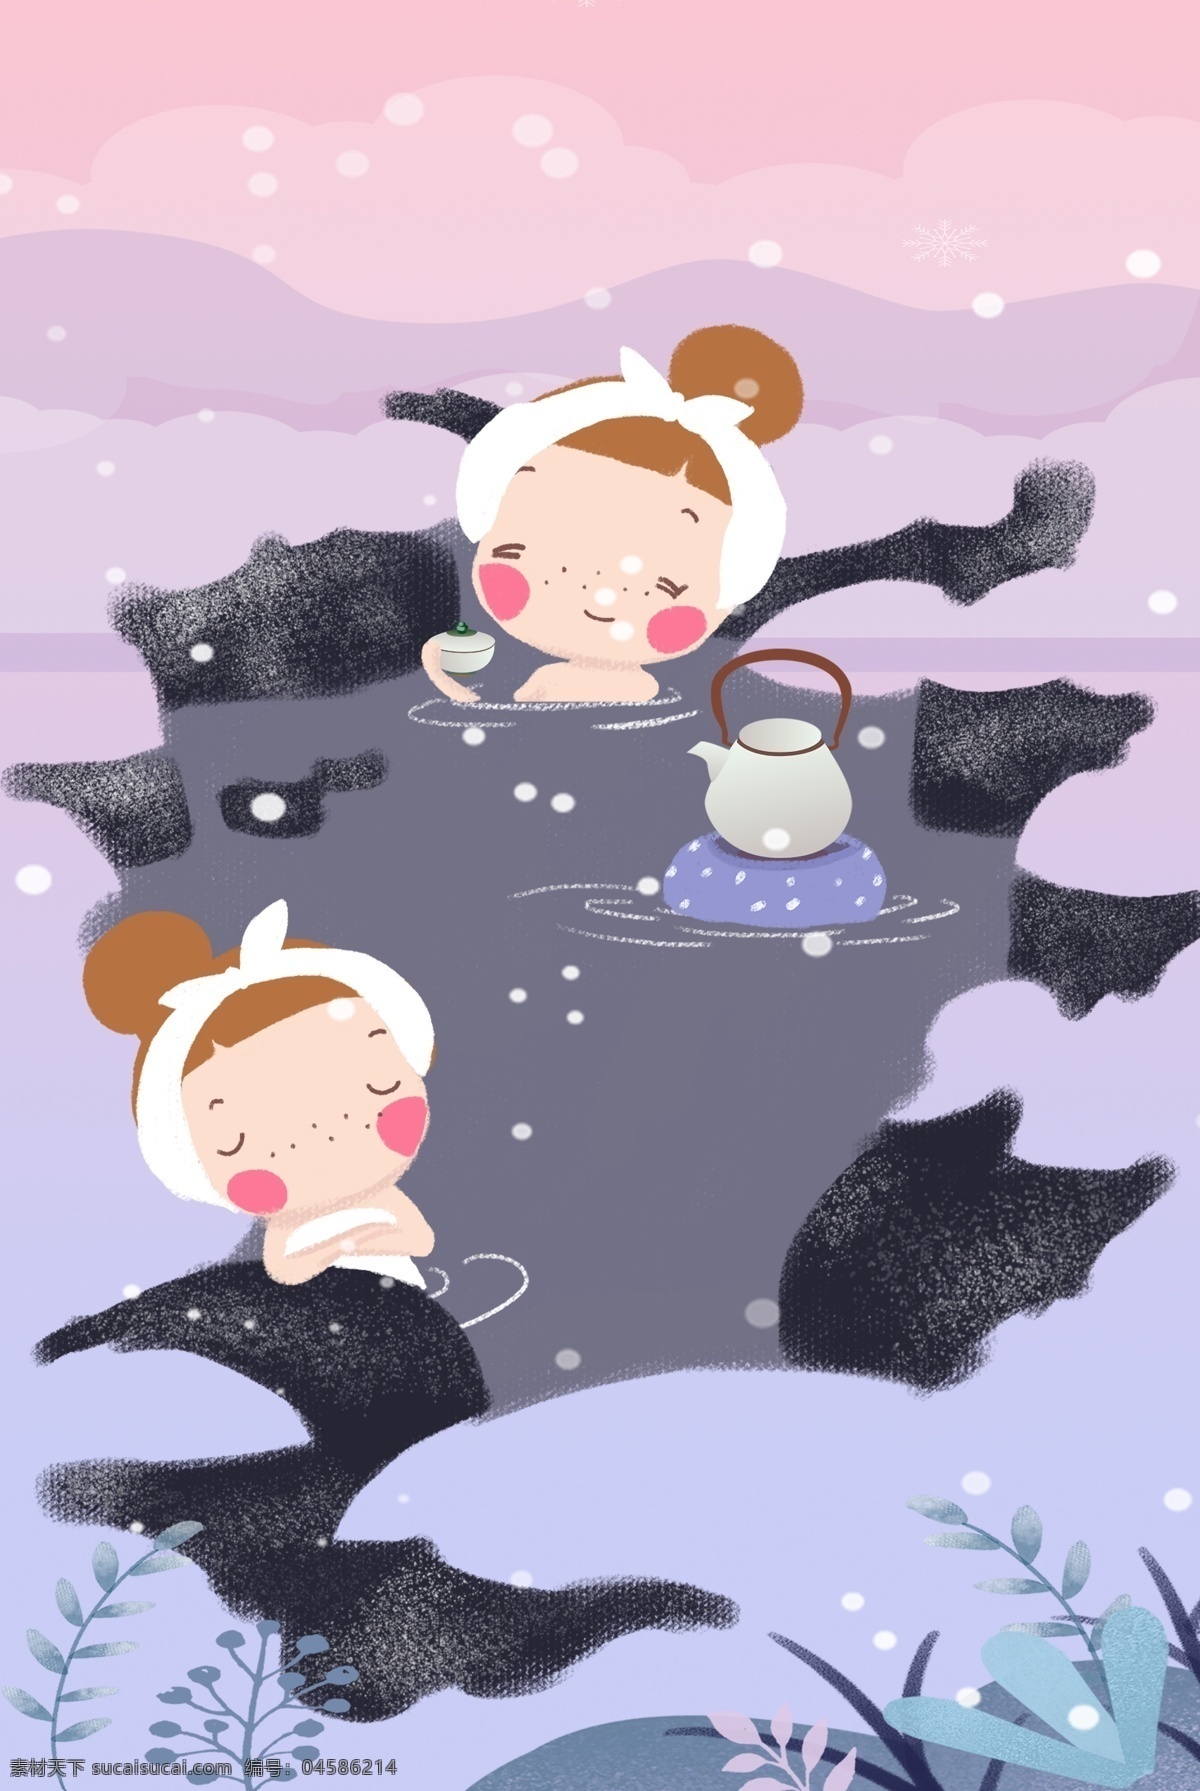 12月你好 泡温泉背景 插画 女孩 雪 12月 冬季 卡通 淡雅 精简 舒适